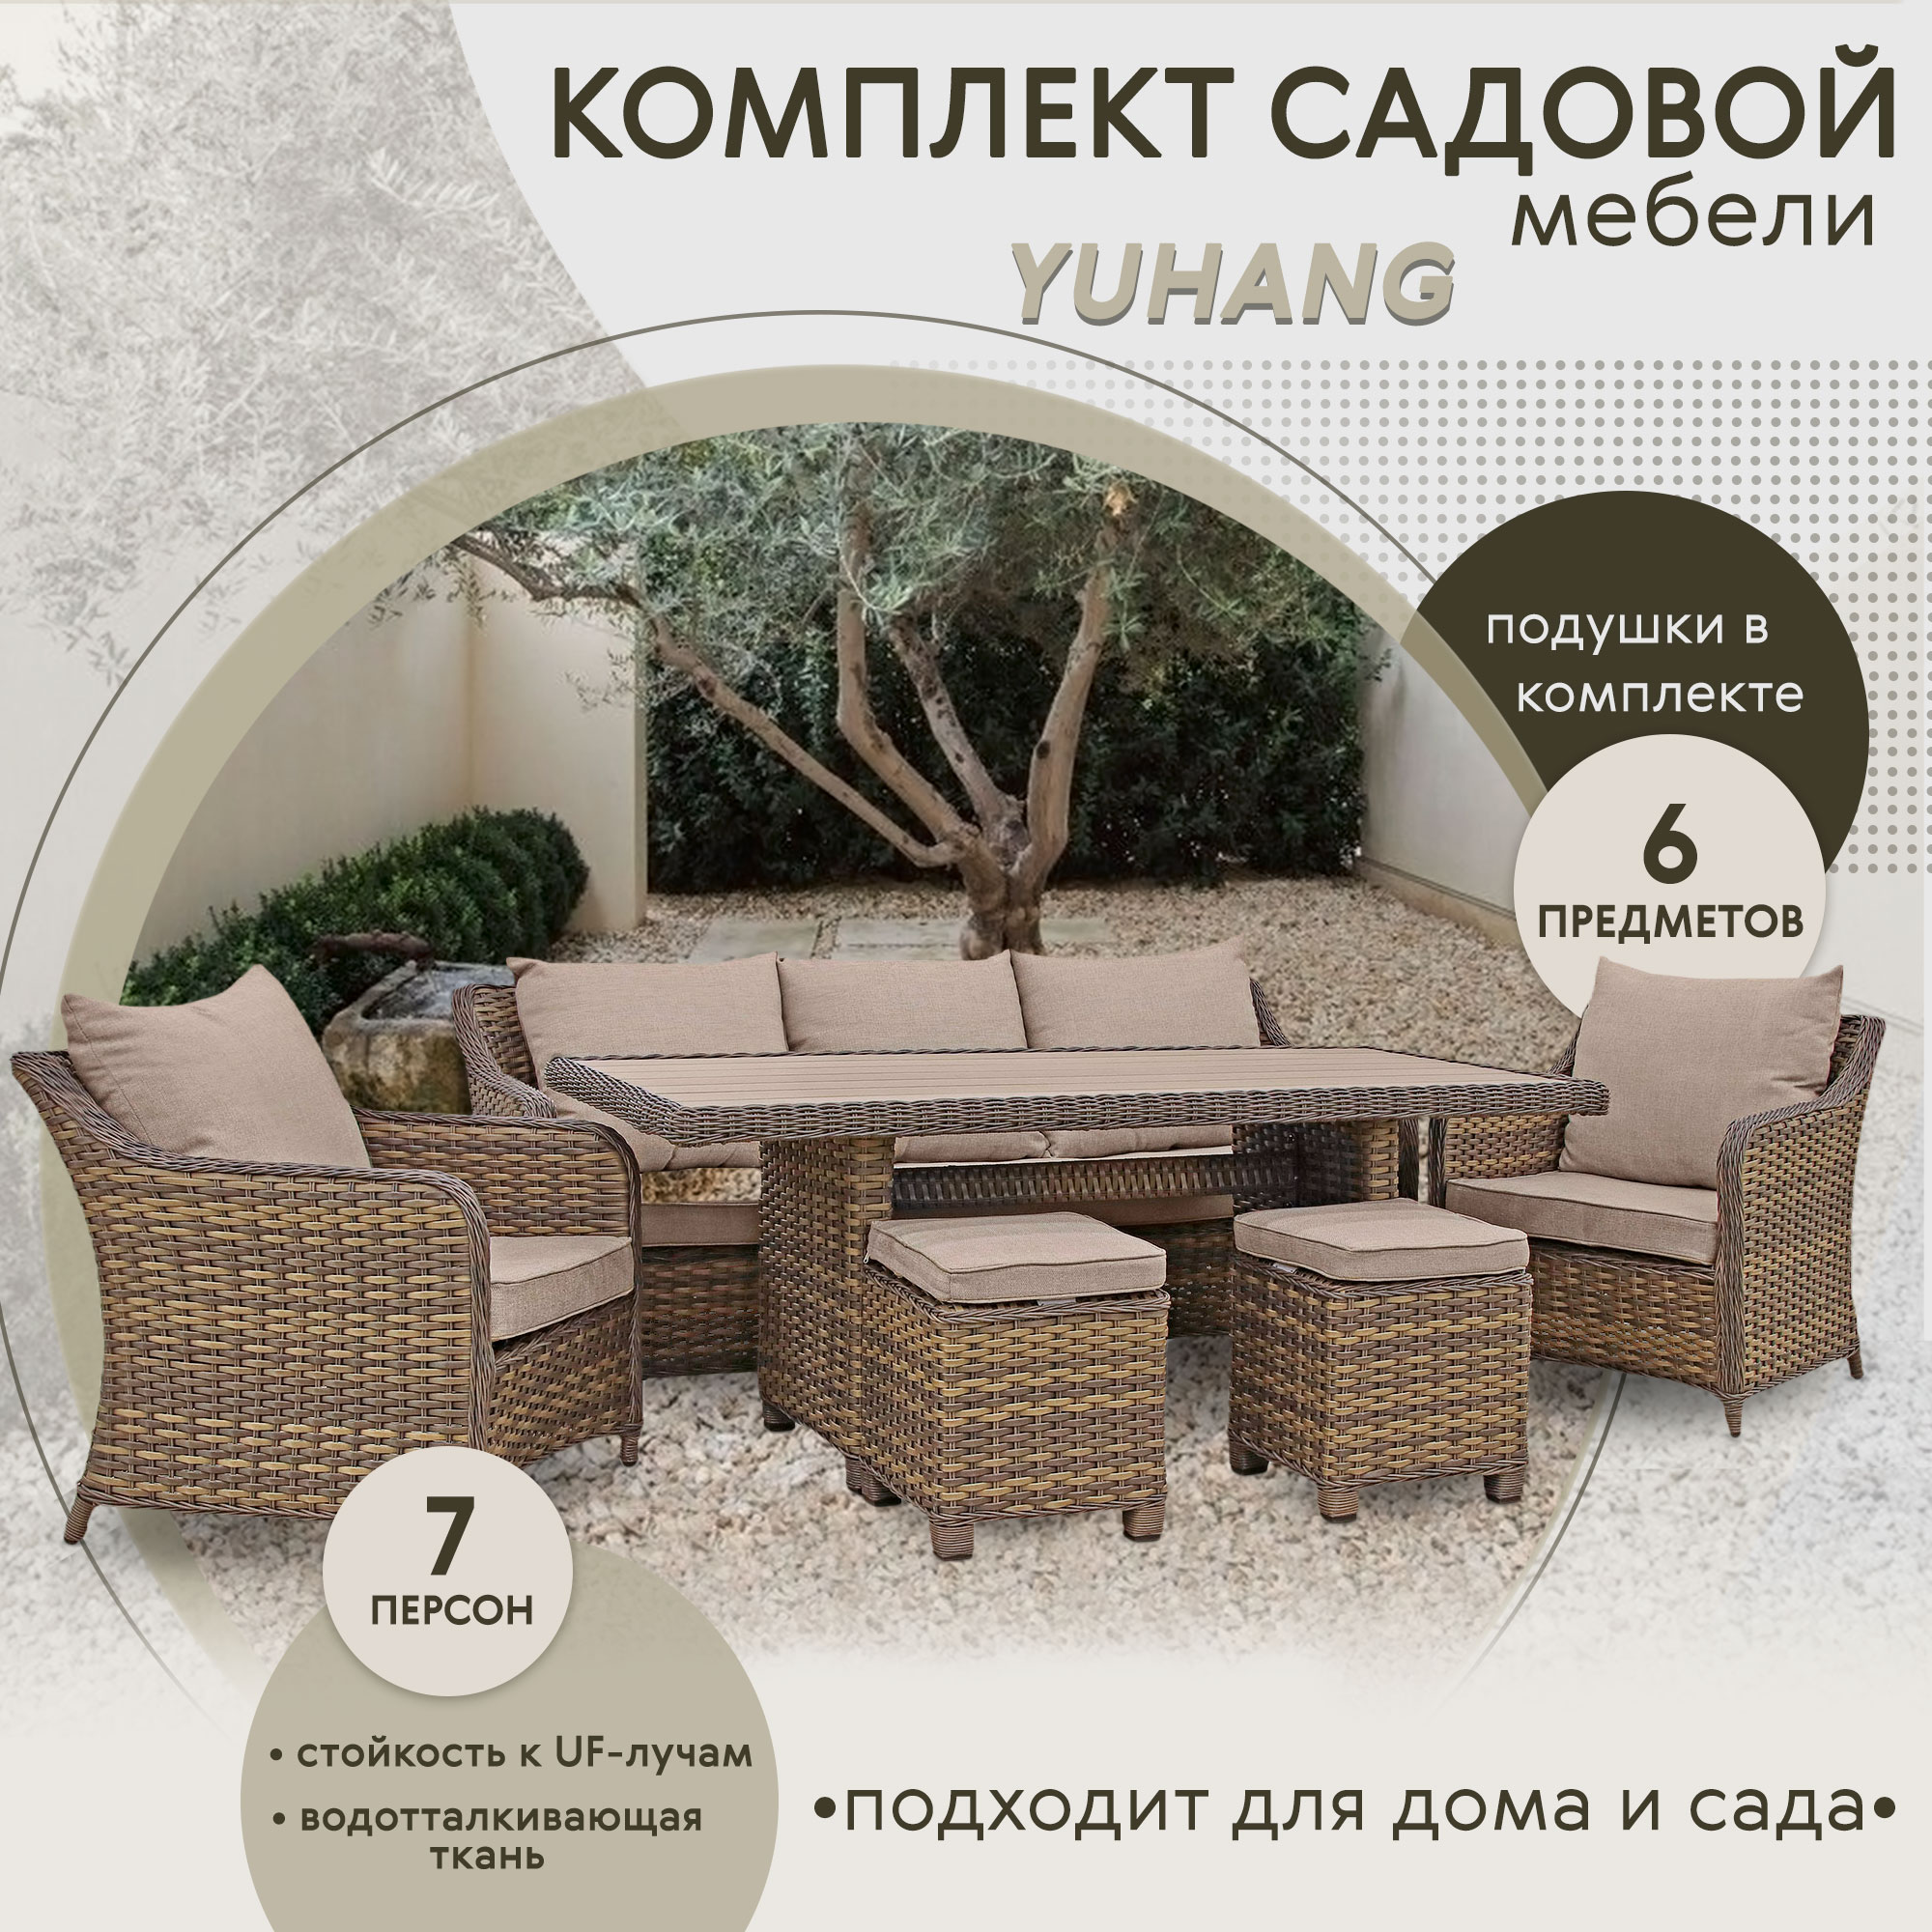 фото Комплект мебели yuhang серо-коричневый с бежевым 6 предметов